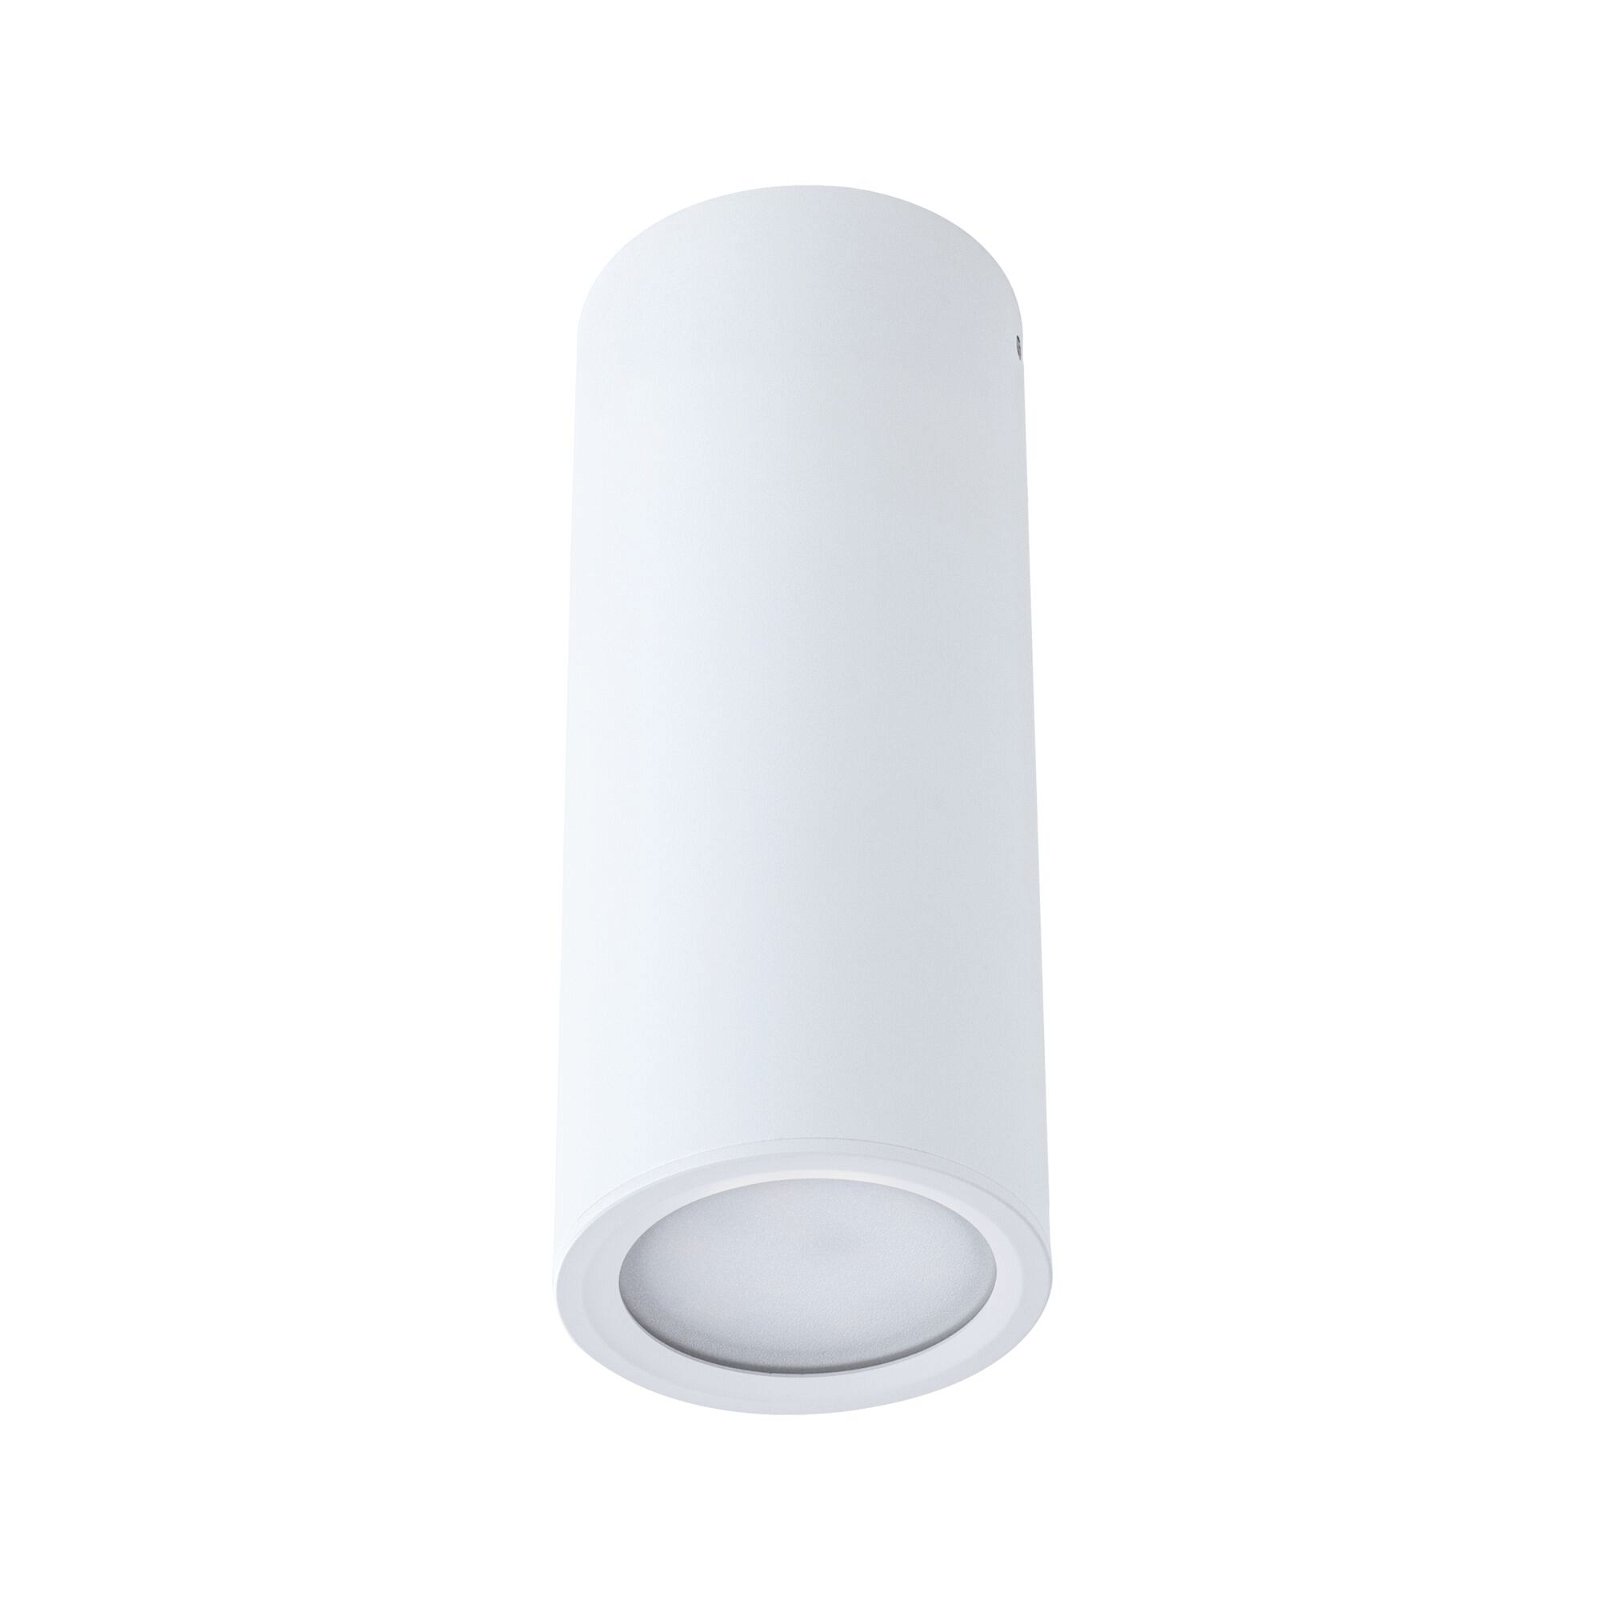 LED Ceiling luminaire 3-Step-Dim Barrel 2700K 470lm 230V 6W dimmable Matt white